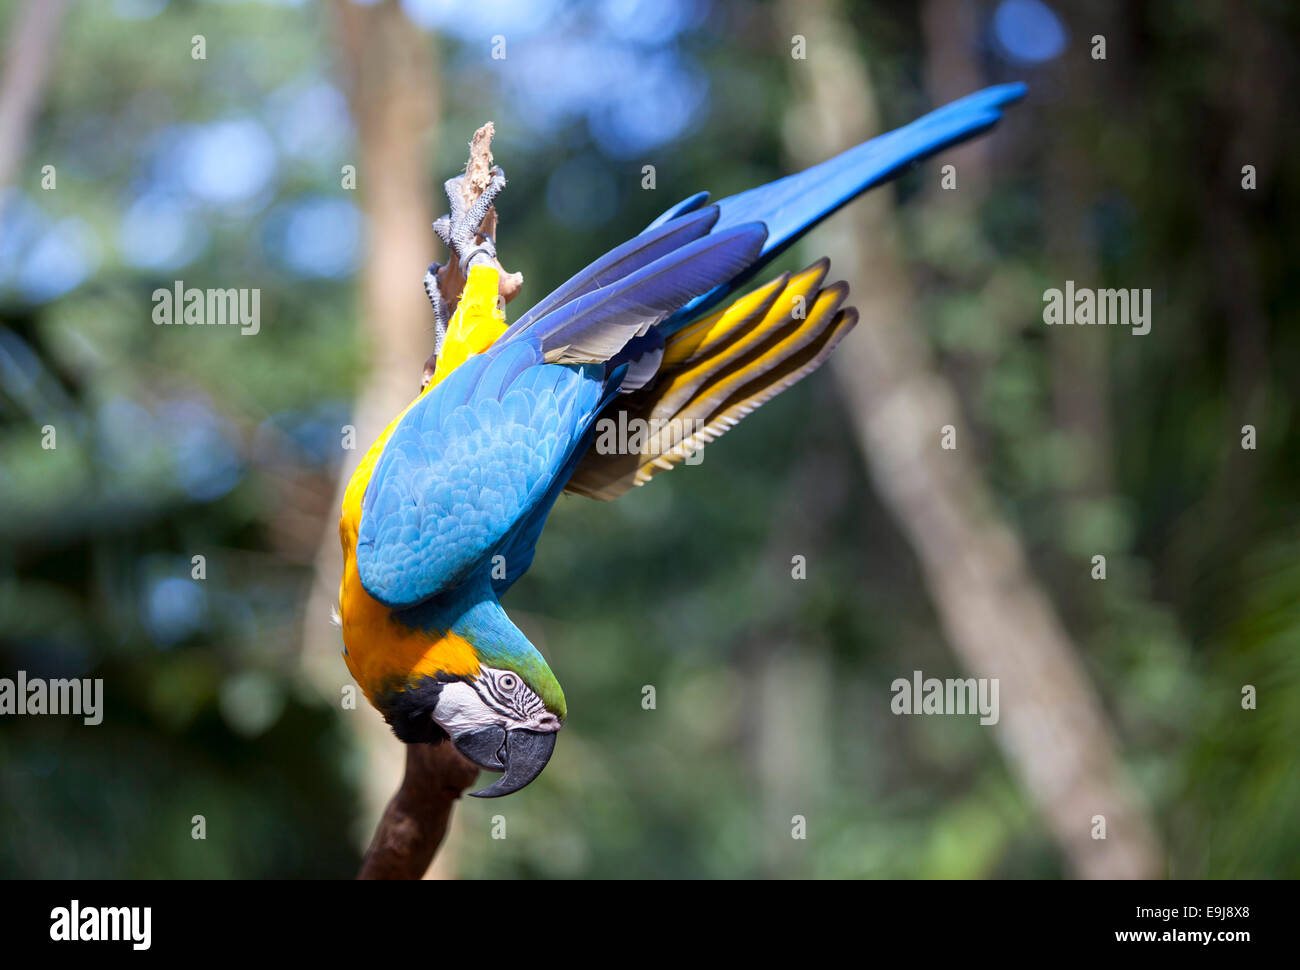 Acrobatic parrot. Parque das Aves, Foz do Iguaçu. Brazil. Stock Photo